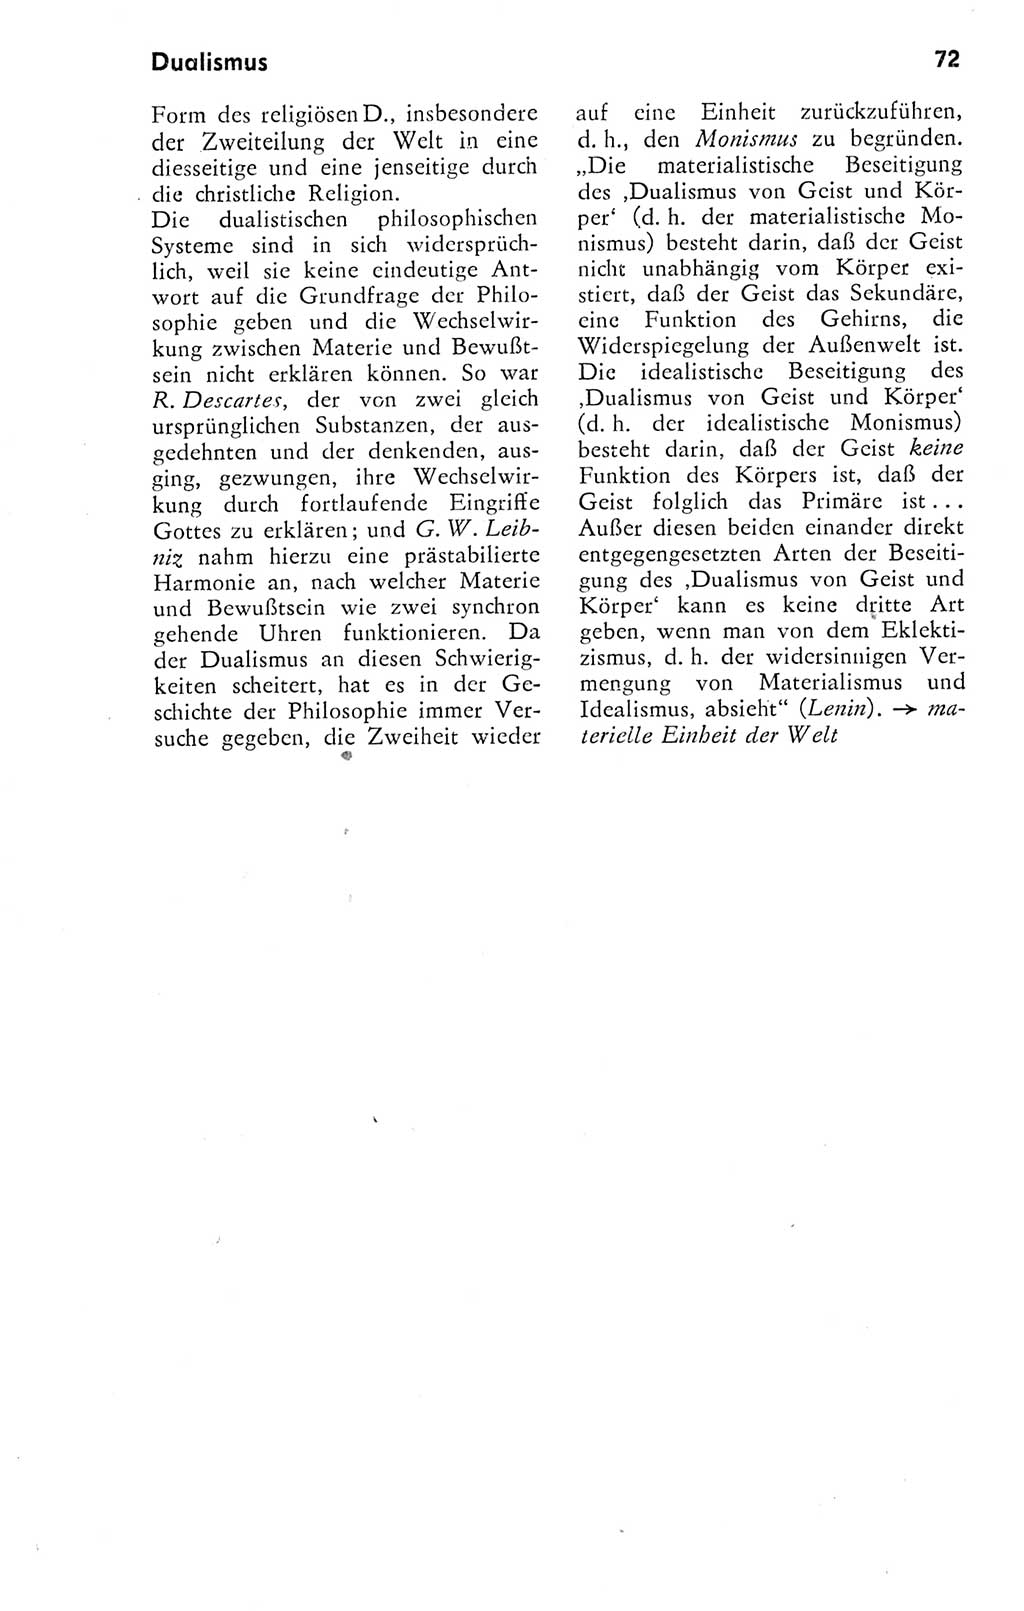 Kleines Wörterbuch der marxistisch-leninistischen Philosophie [Deutsche Demokratische Republik (DDR)] 1974, Seite 72 (Kl. Wb. ML Phil. DDR 1974, S. 72)